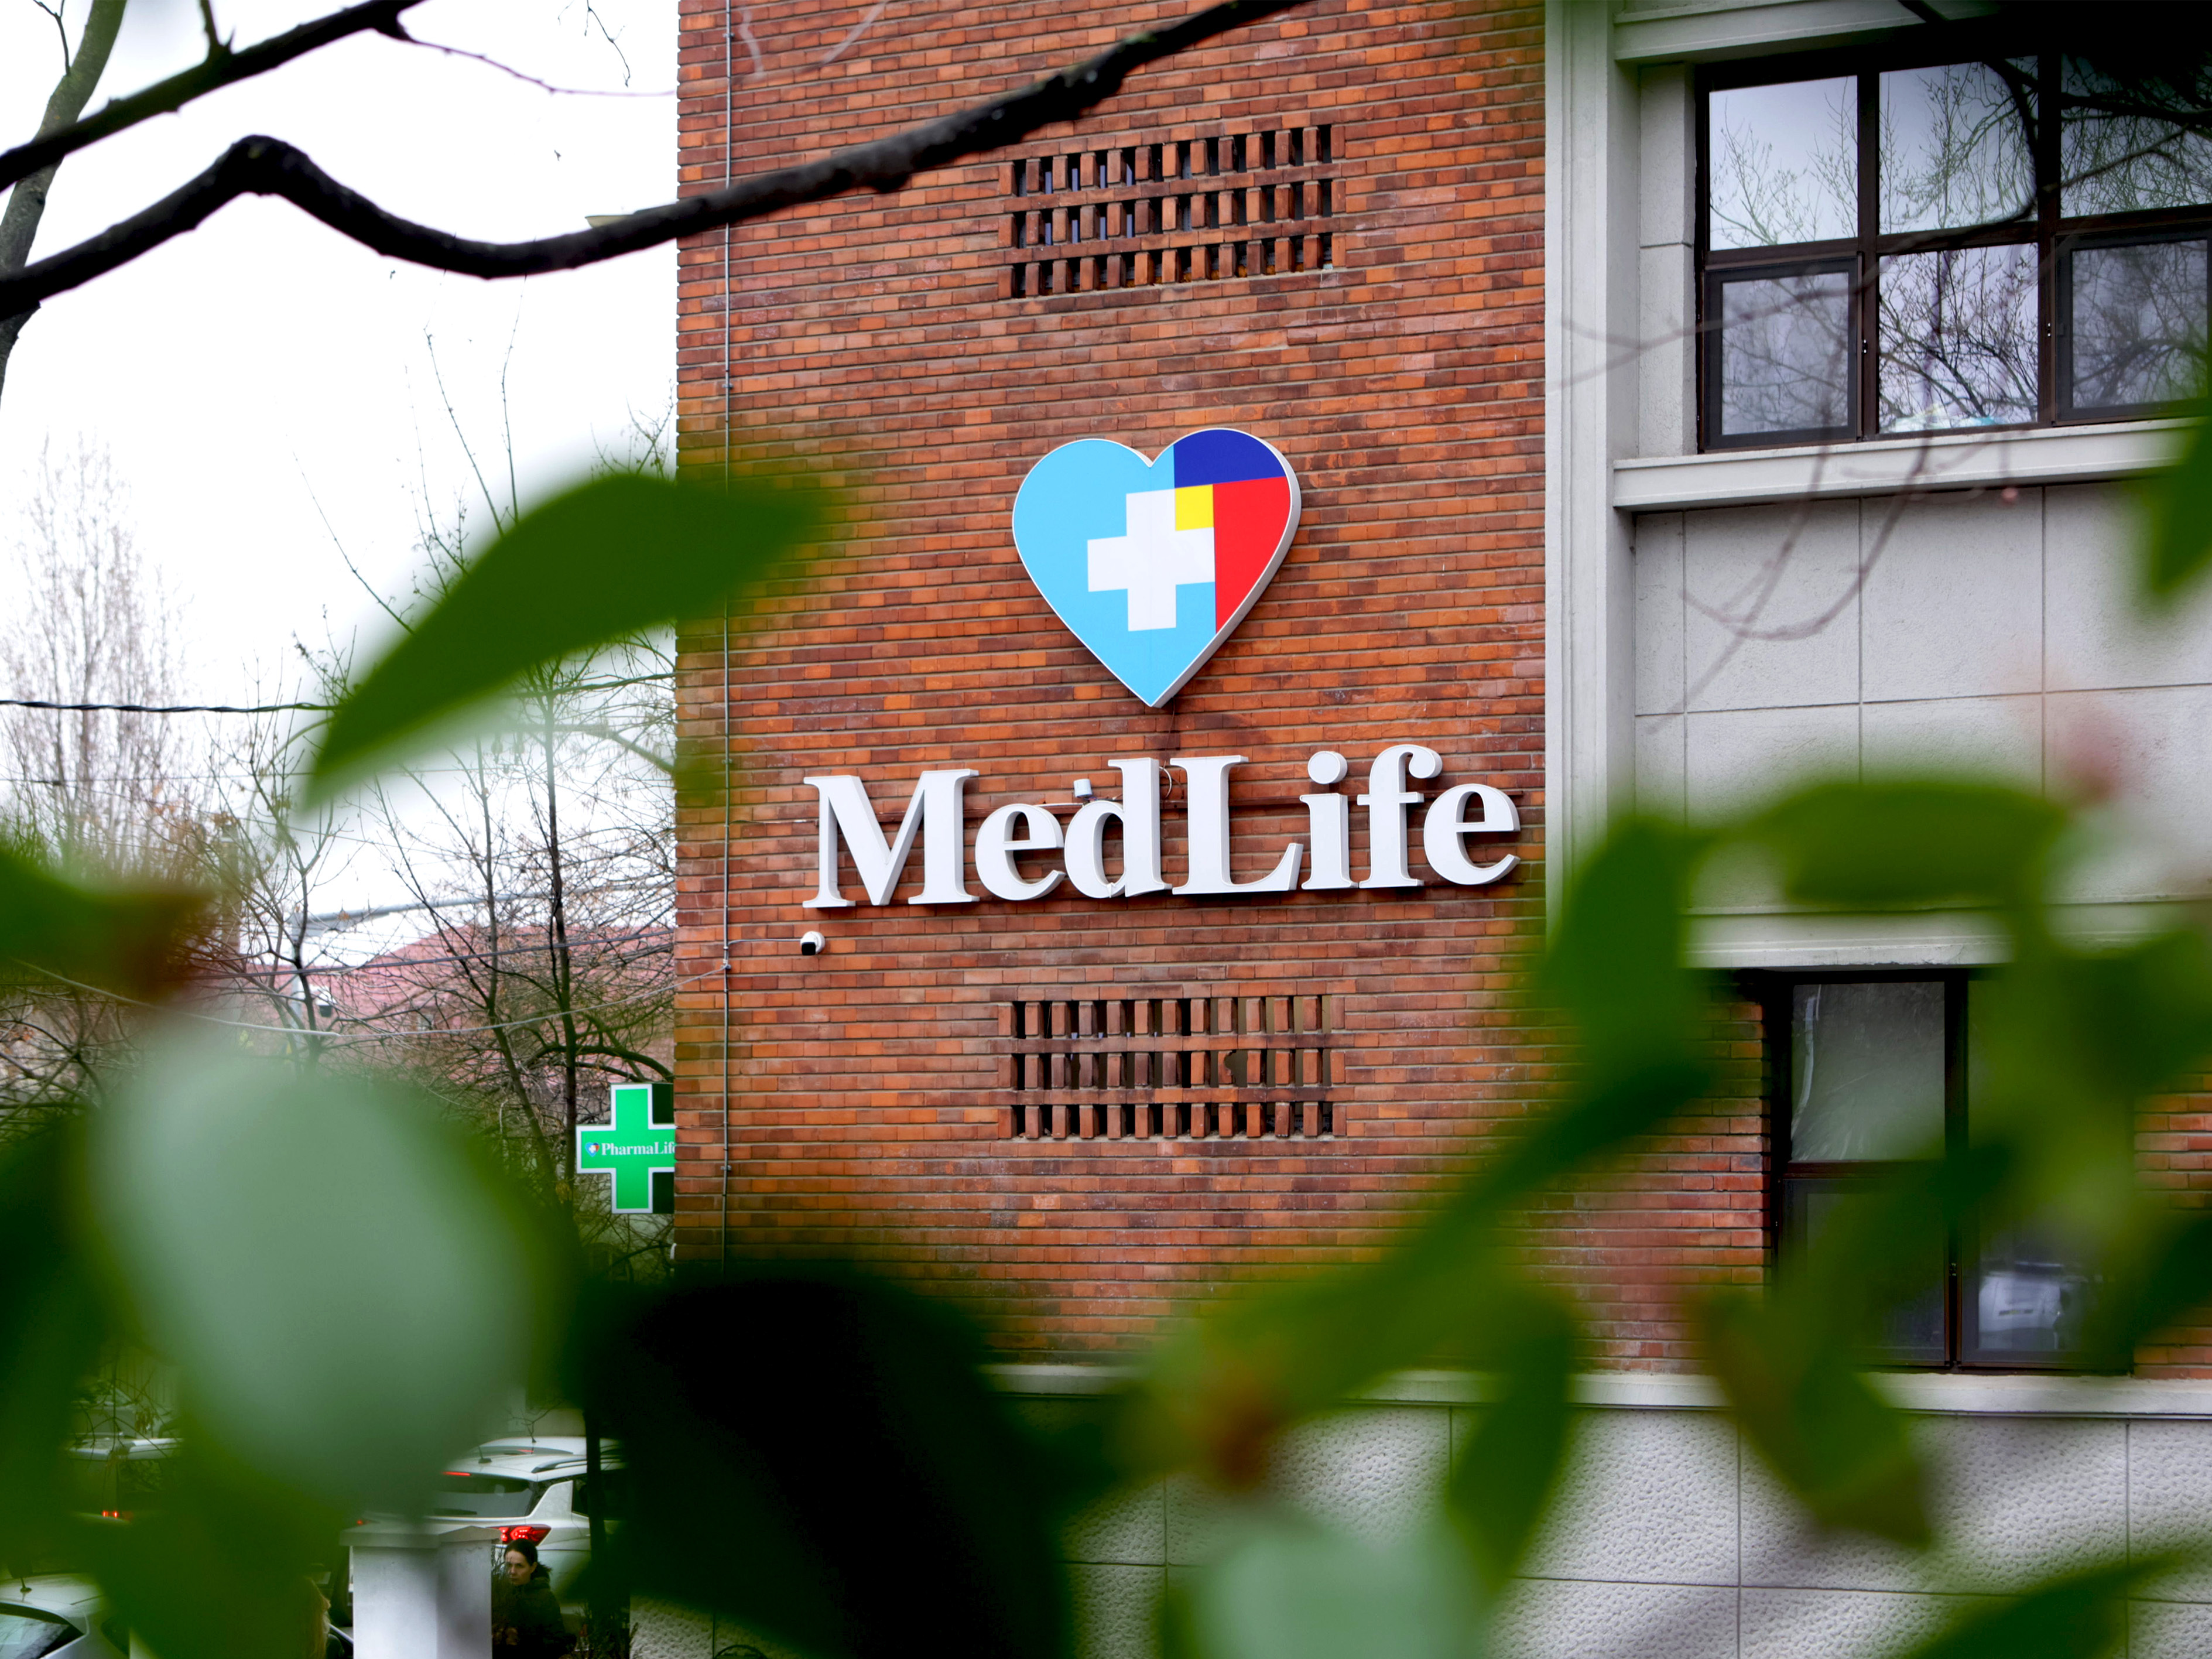 MedLife semnează încă o tranzacţie: Operatorul de servicii medicale private intră în acţionariatul reţelei de genetică medicală umană Personal Genetics, cu 18 centre la nivel naţional